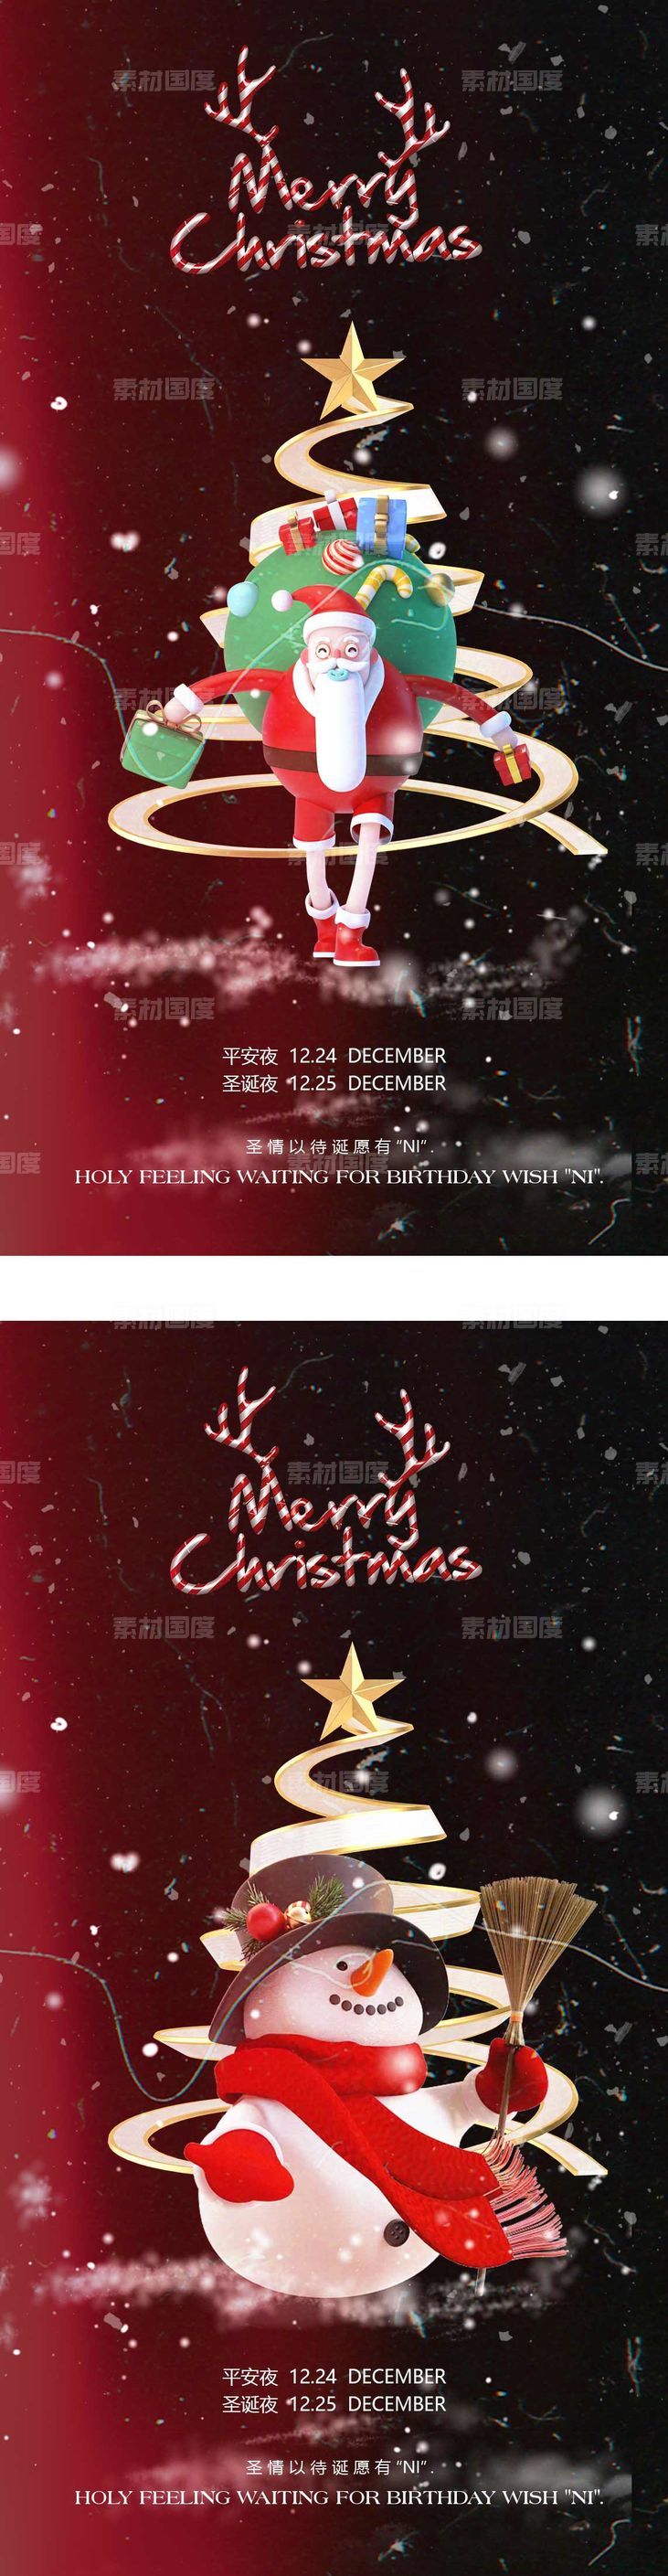 医美圣诞节系列海报